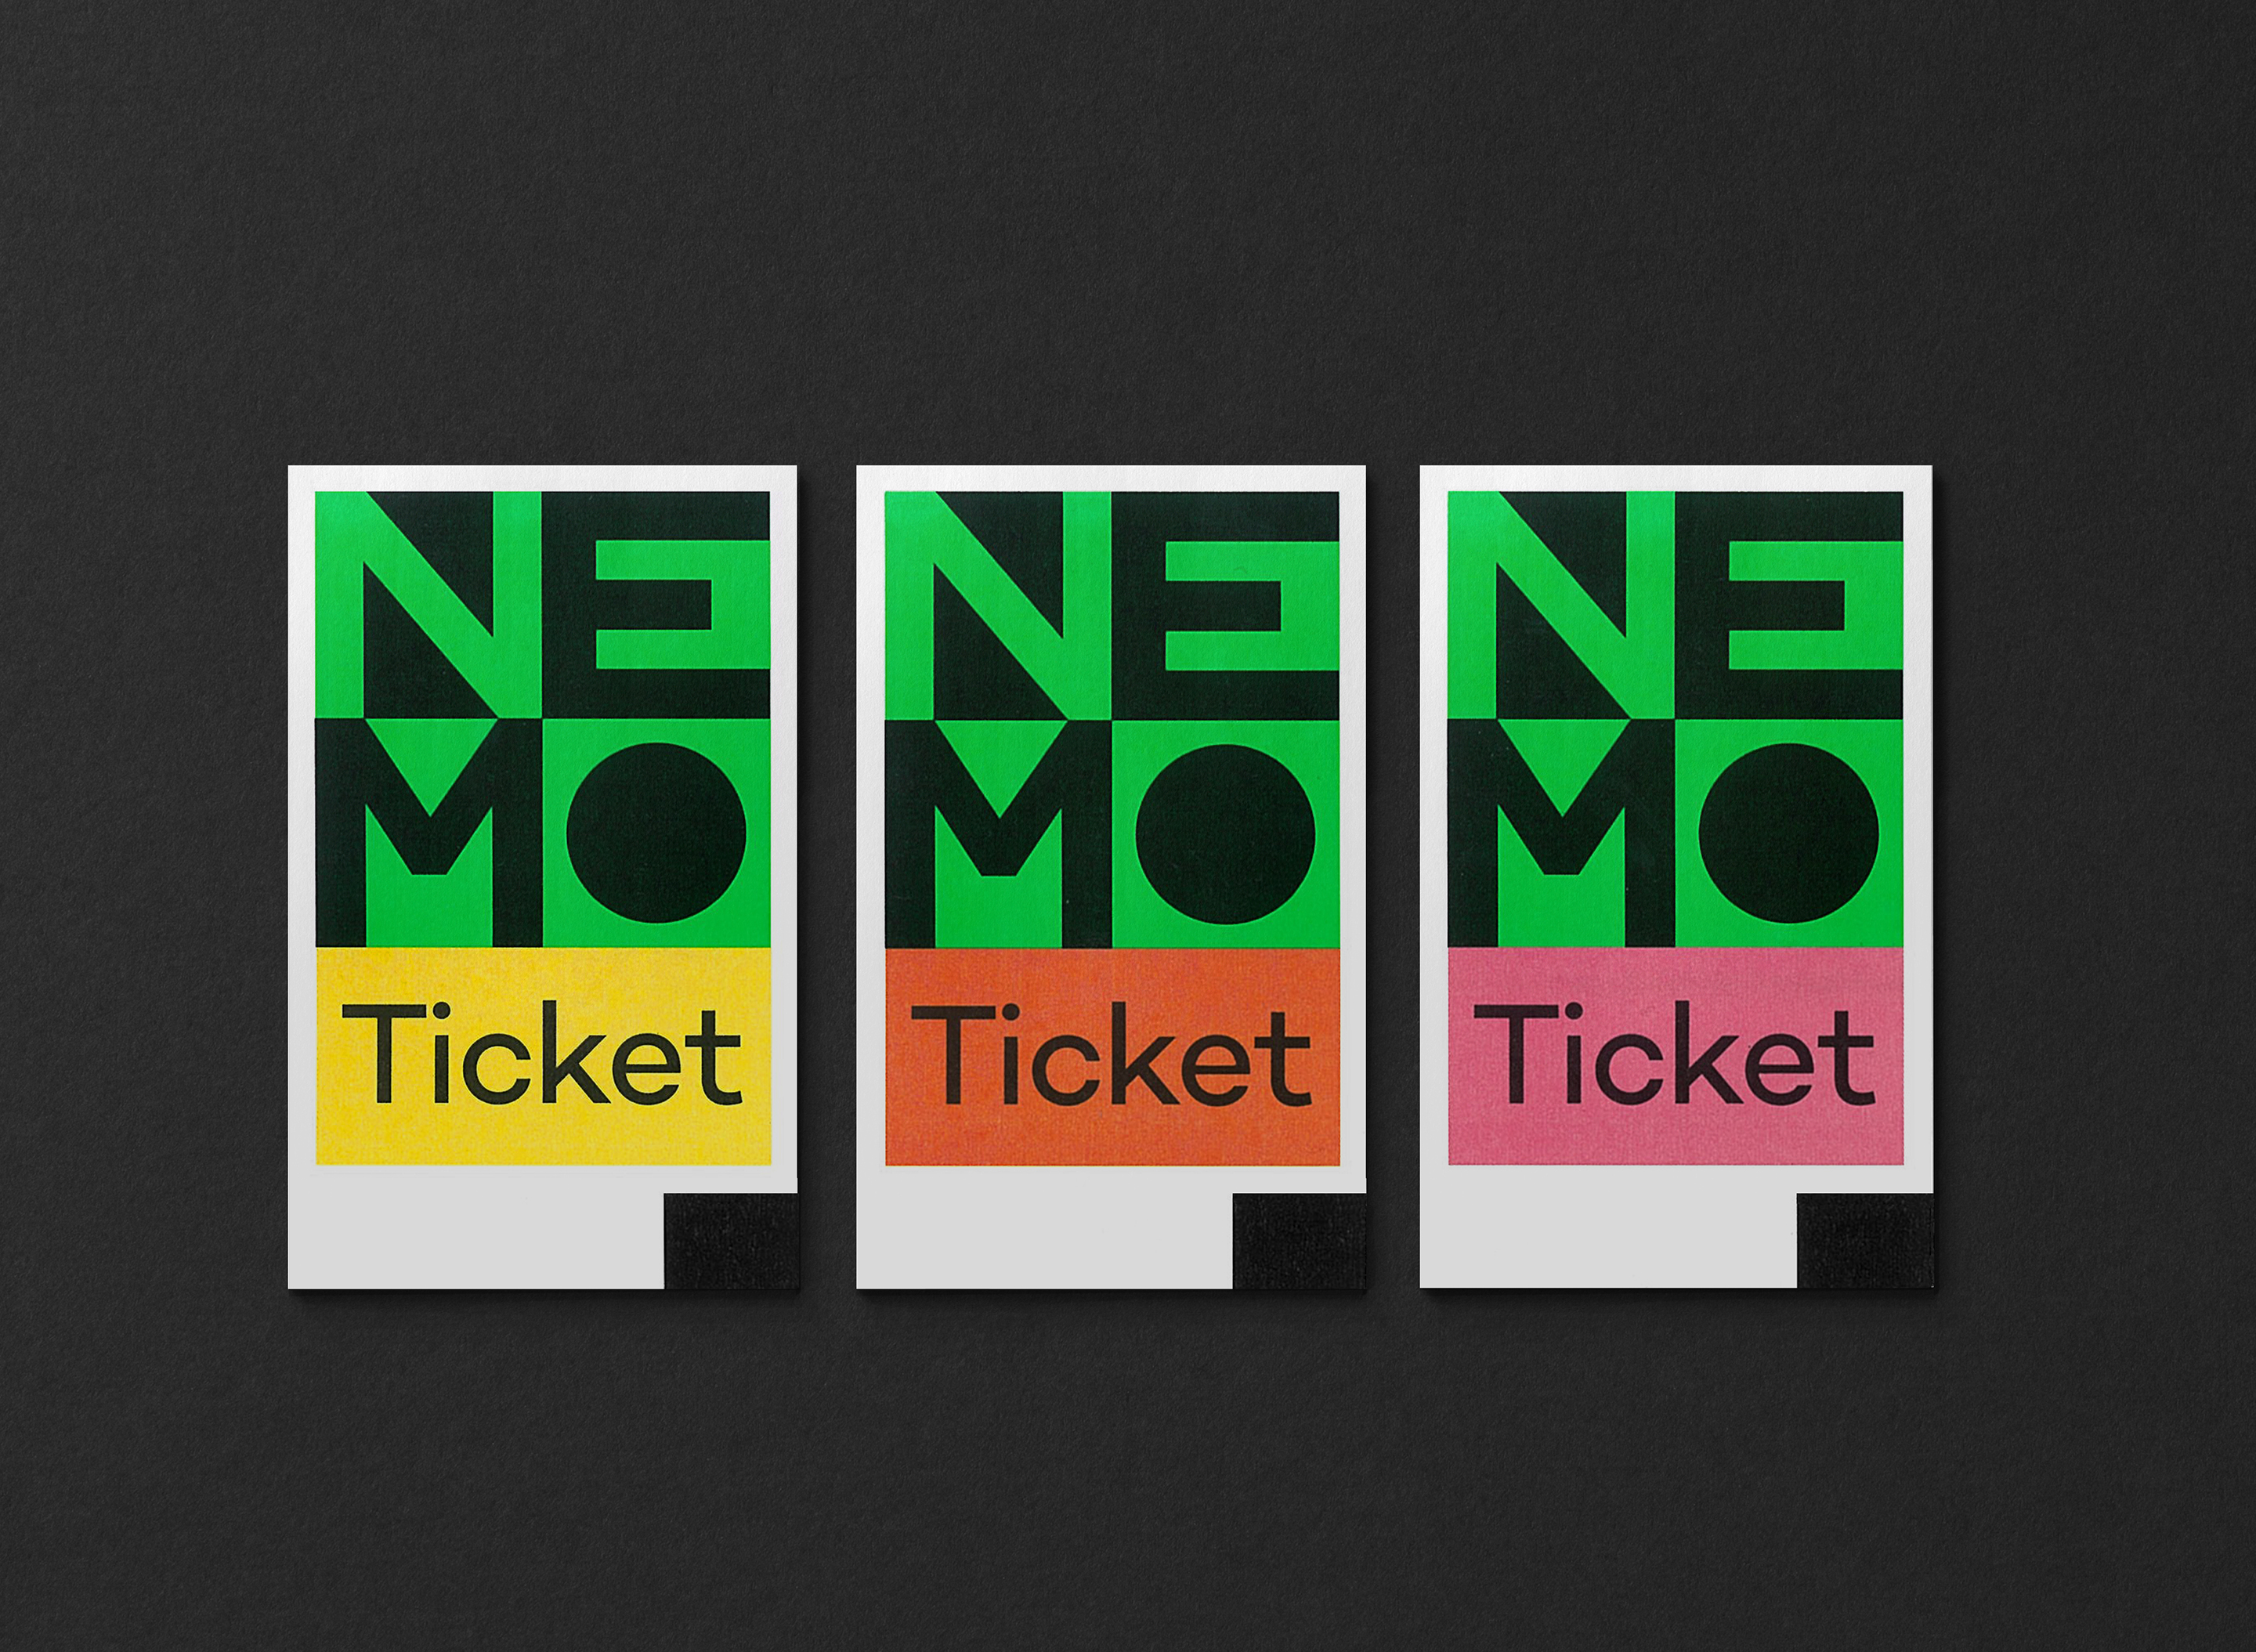 studio dumbar design visual brand identity for Nemo Science Museum ticket design